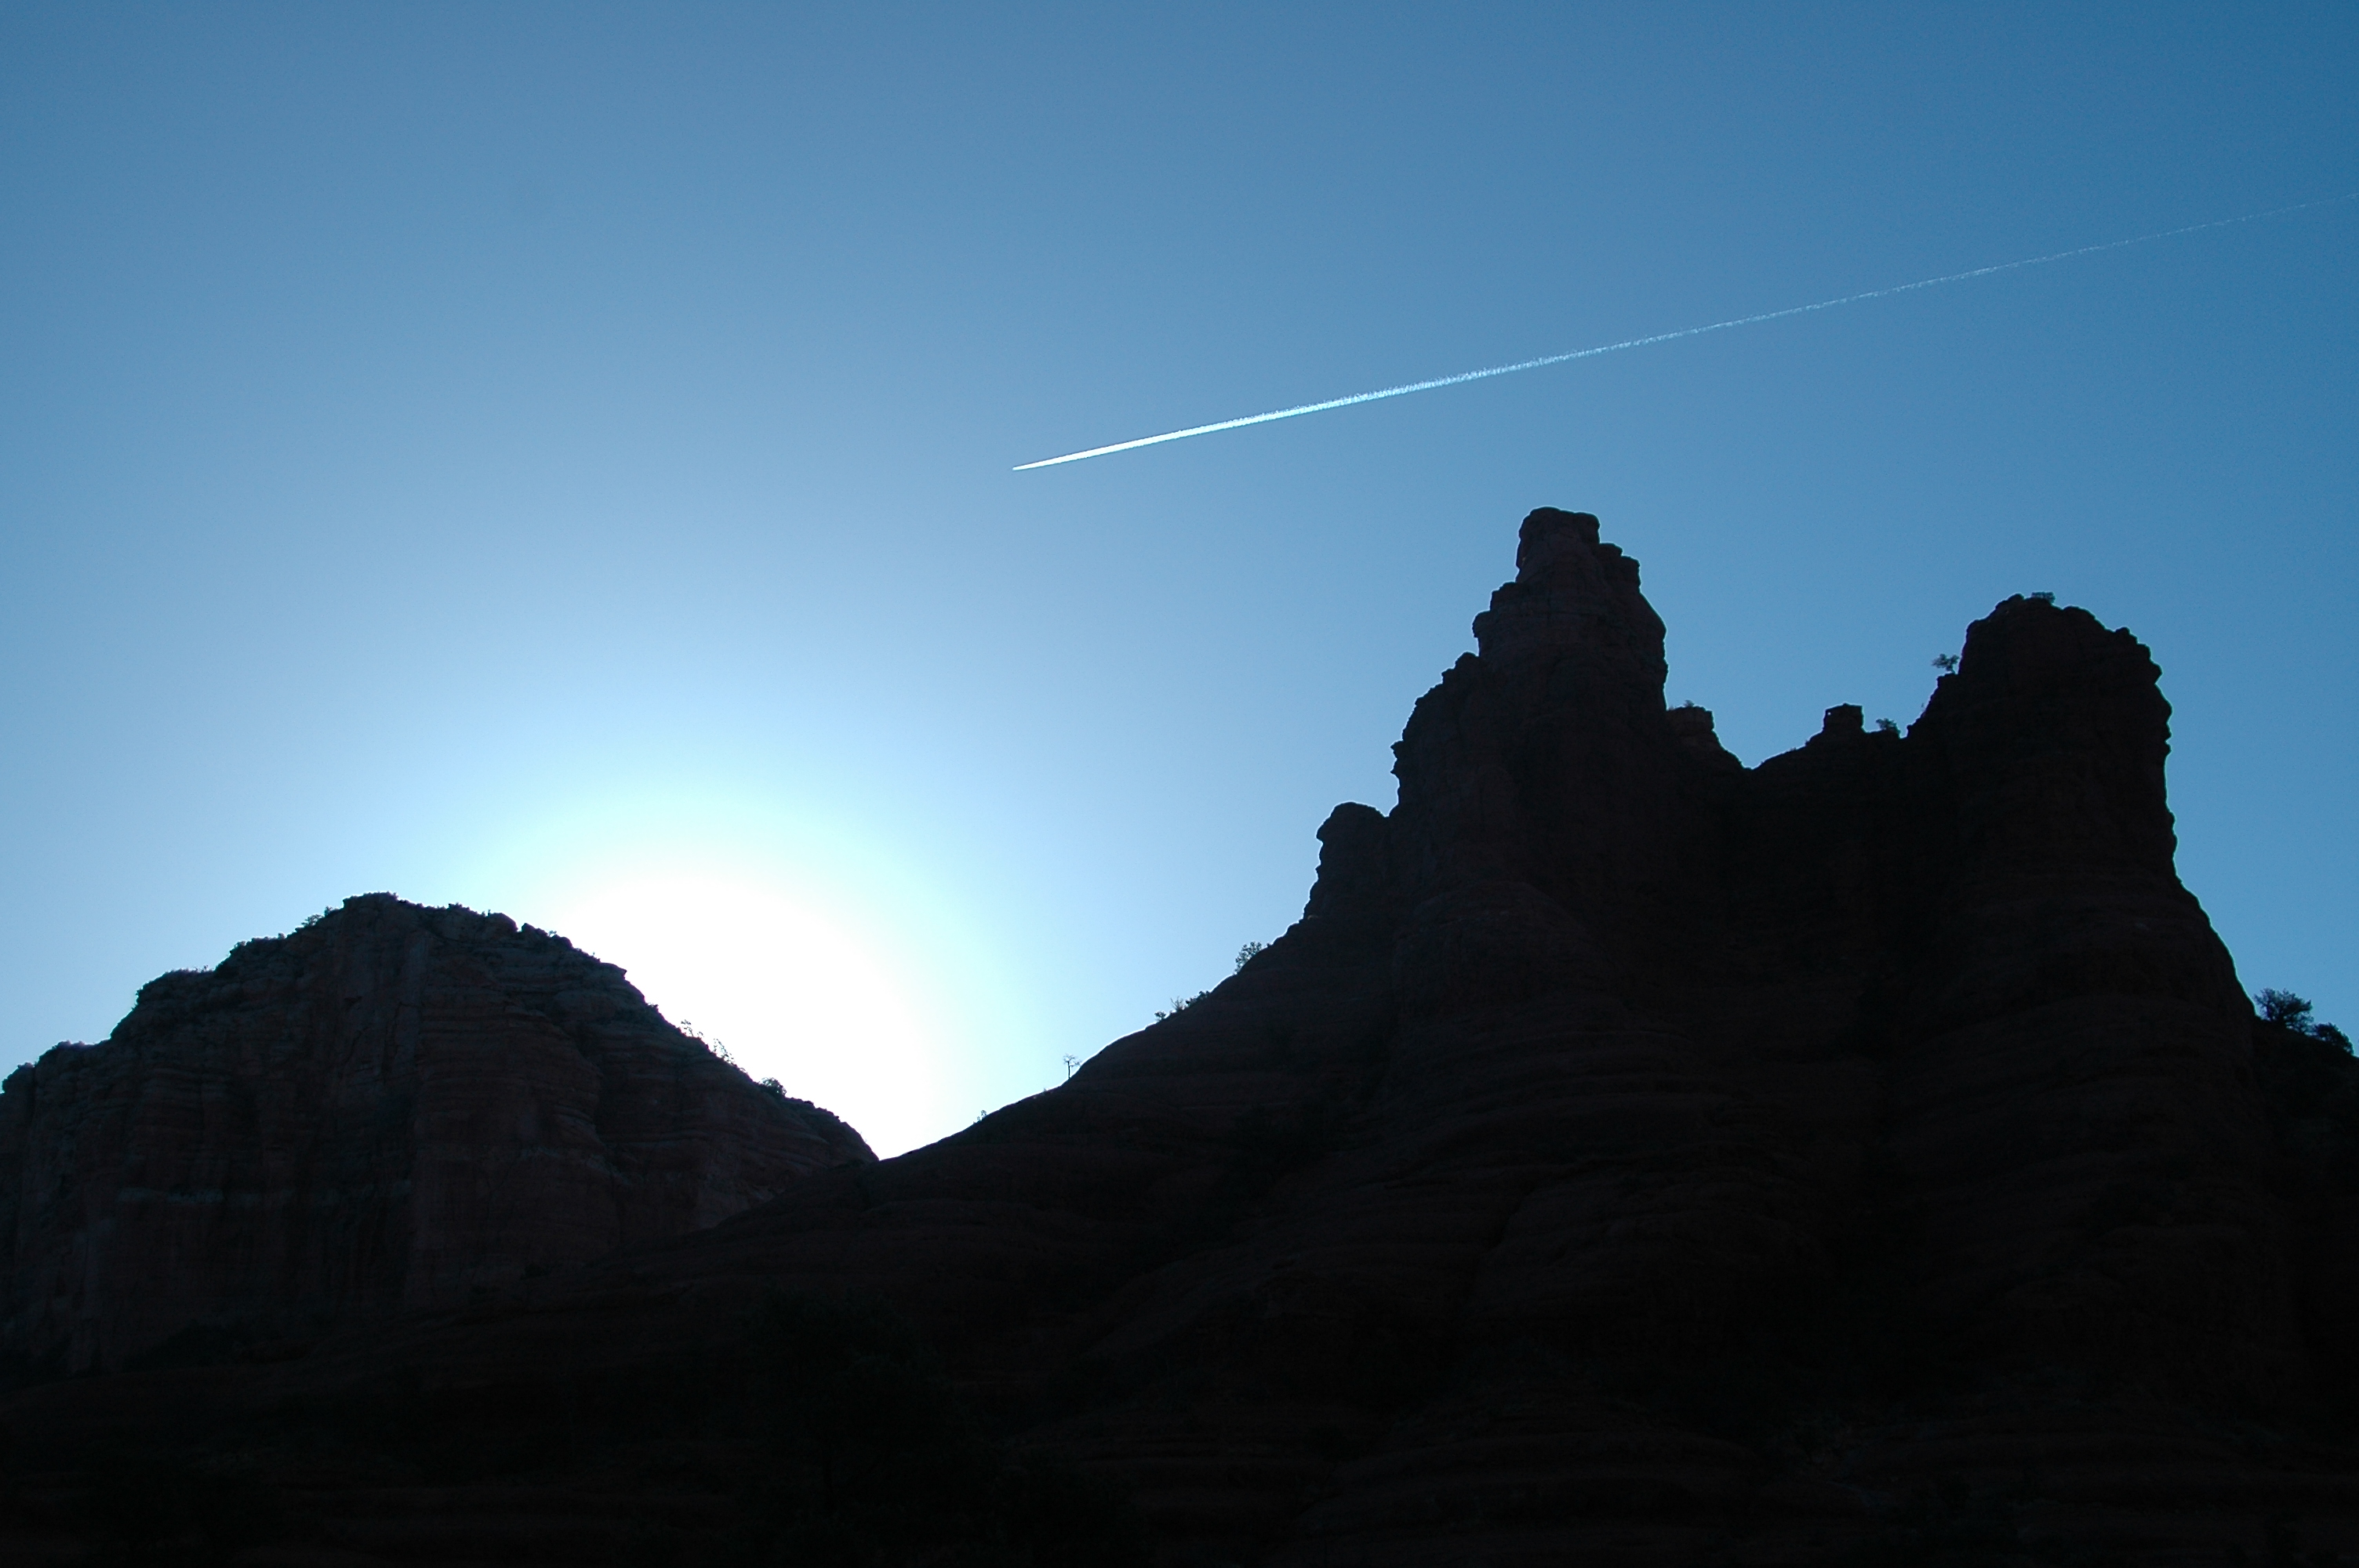 Joe Dobrow photo of sunrise in Sedona, Arizona